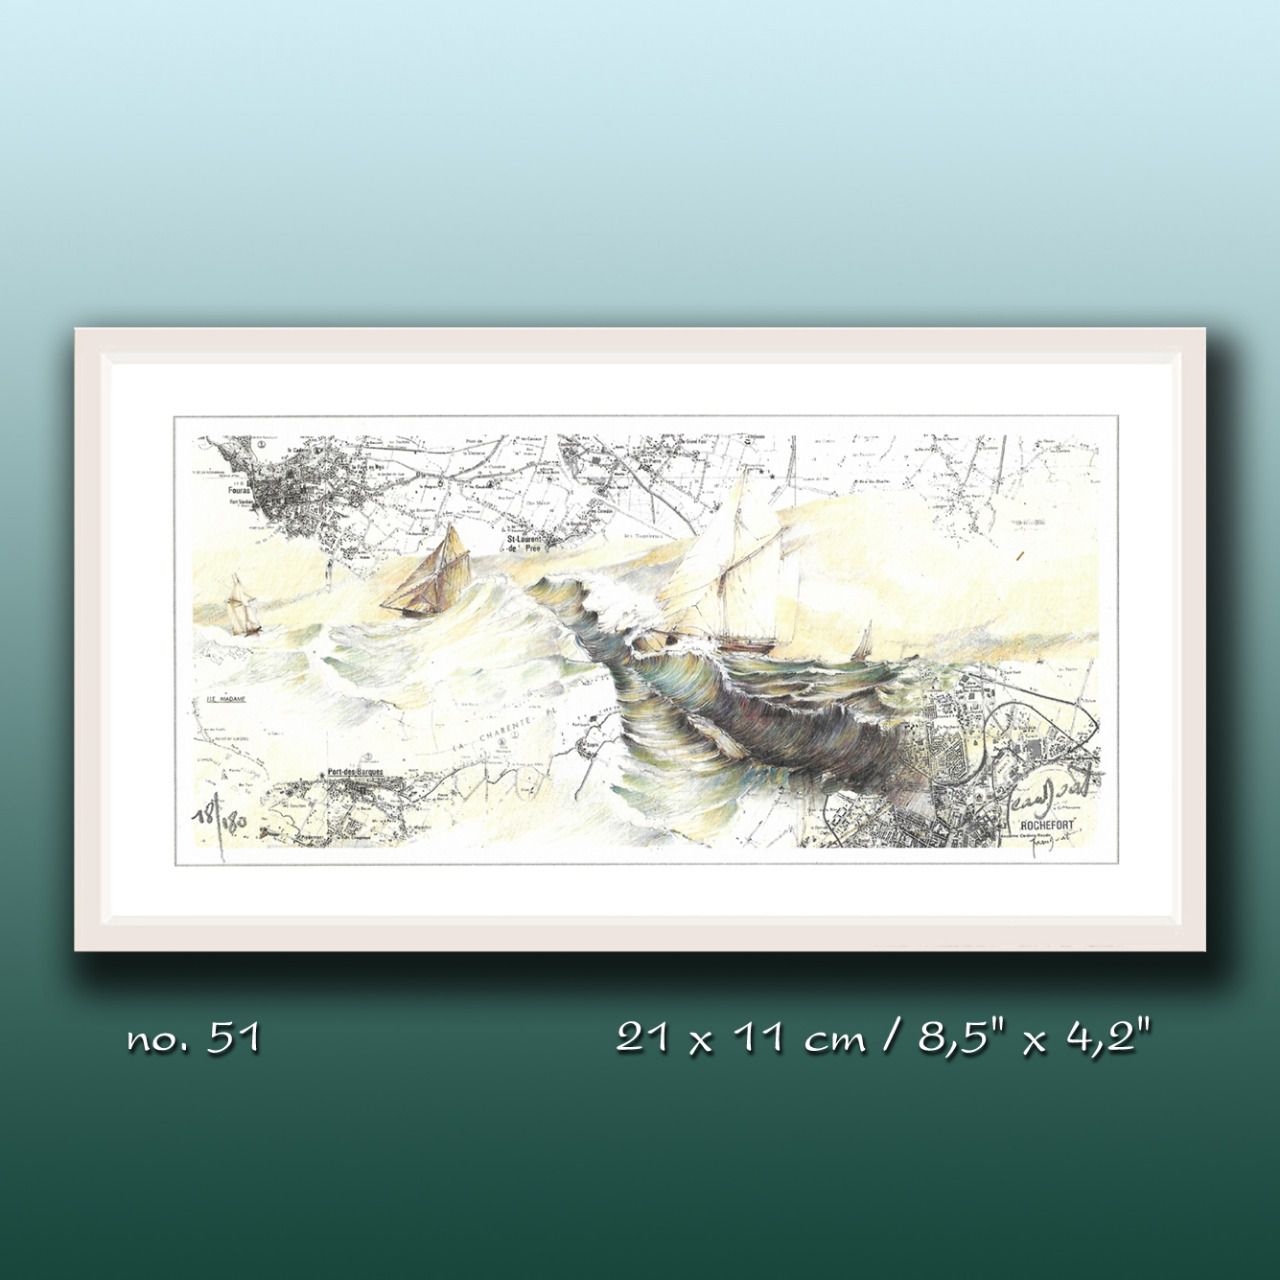 Aquarelle de J. Doat / 20 x 15 cm......................No.51 pf / Tempête dans la Charente ( 1999 ) 